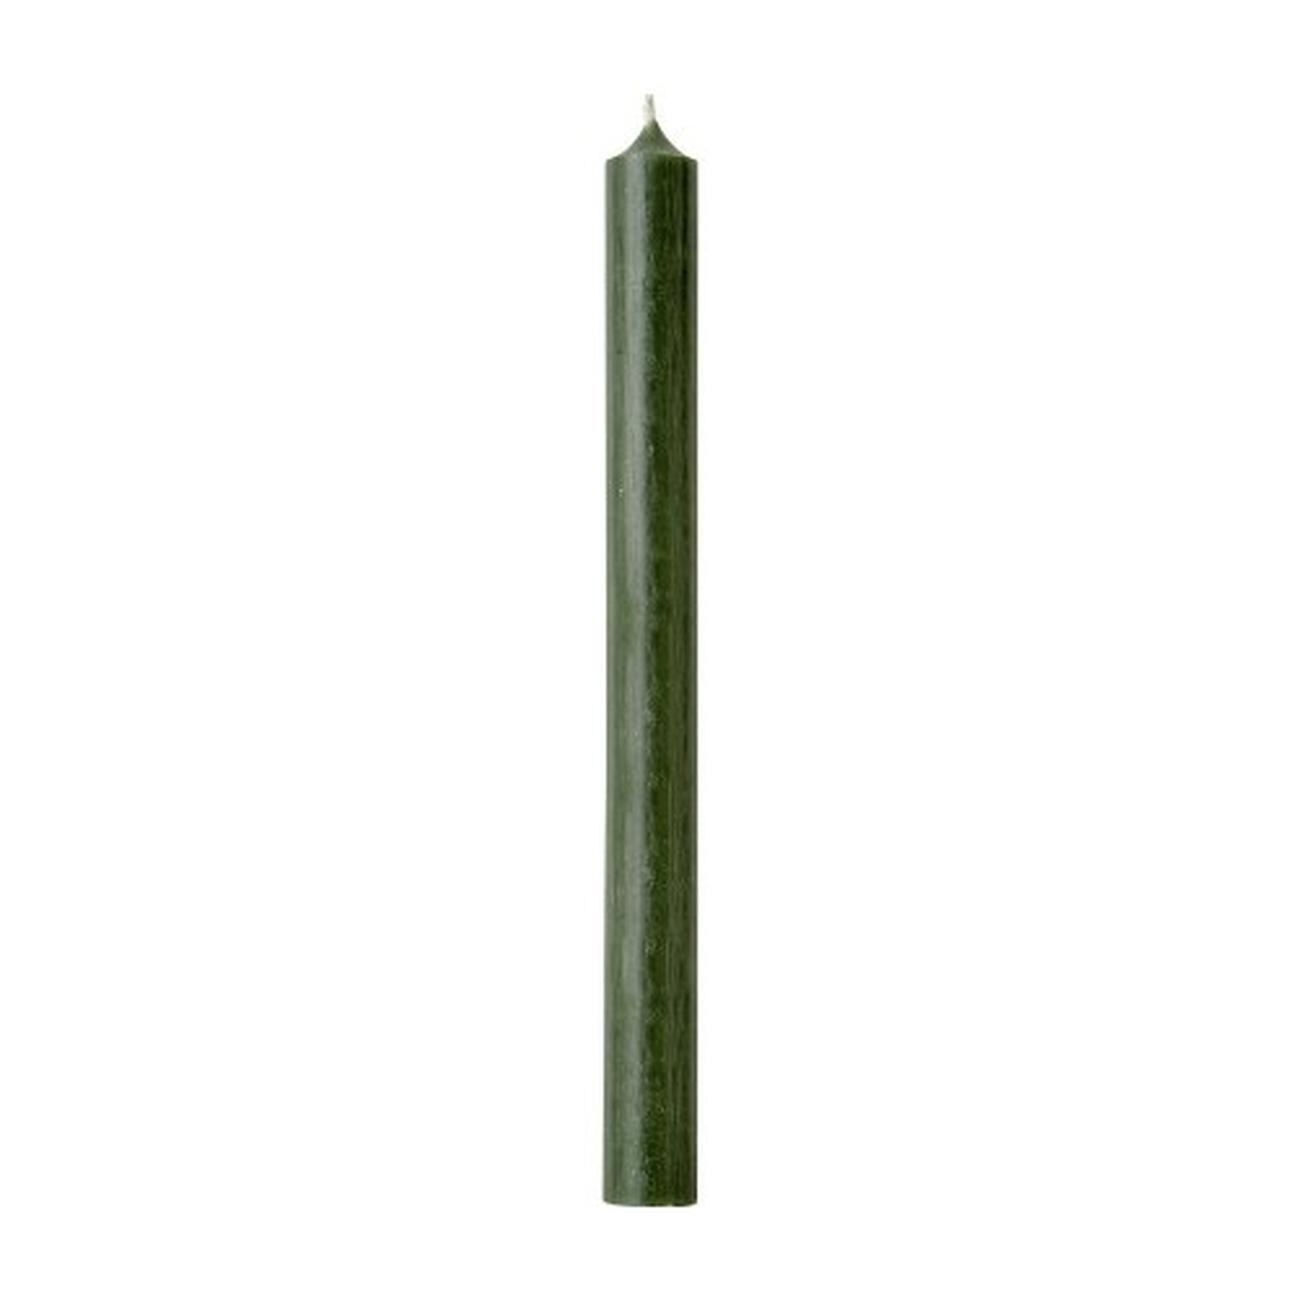 ihr-cylinder-candle-green - IHR Cylinder Candle Green 